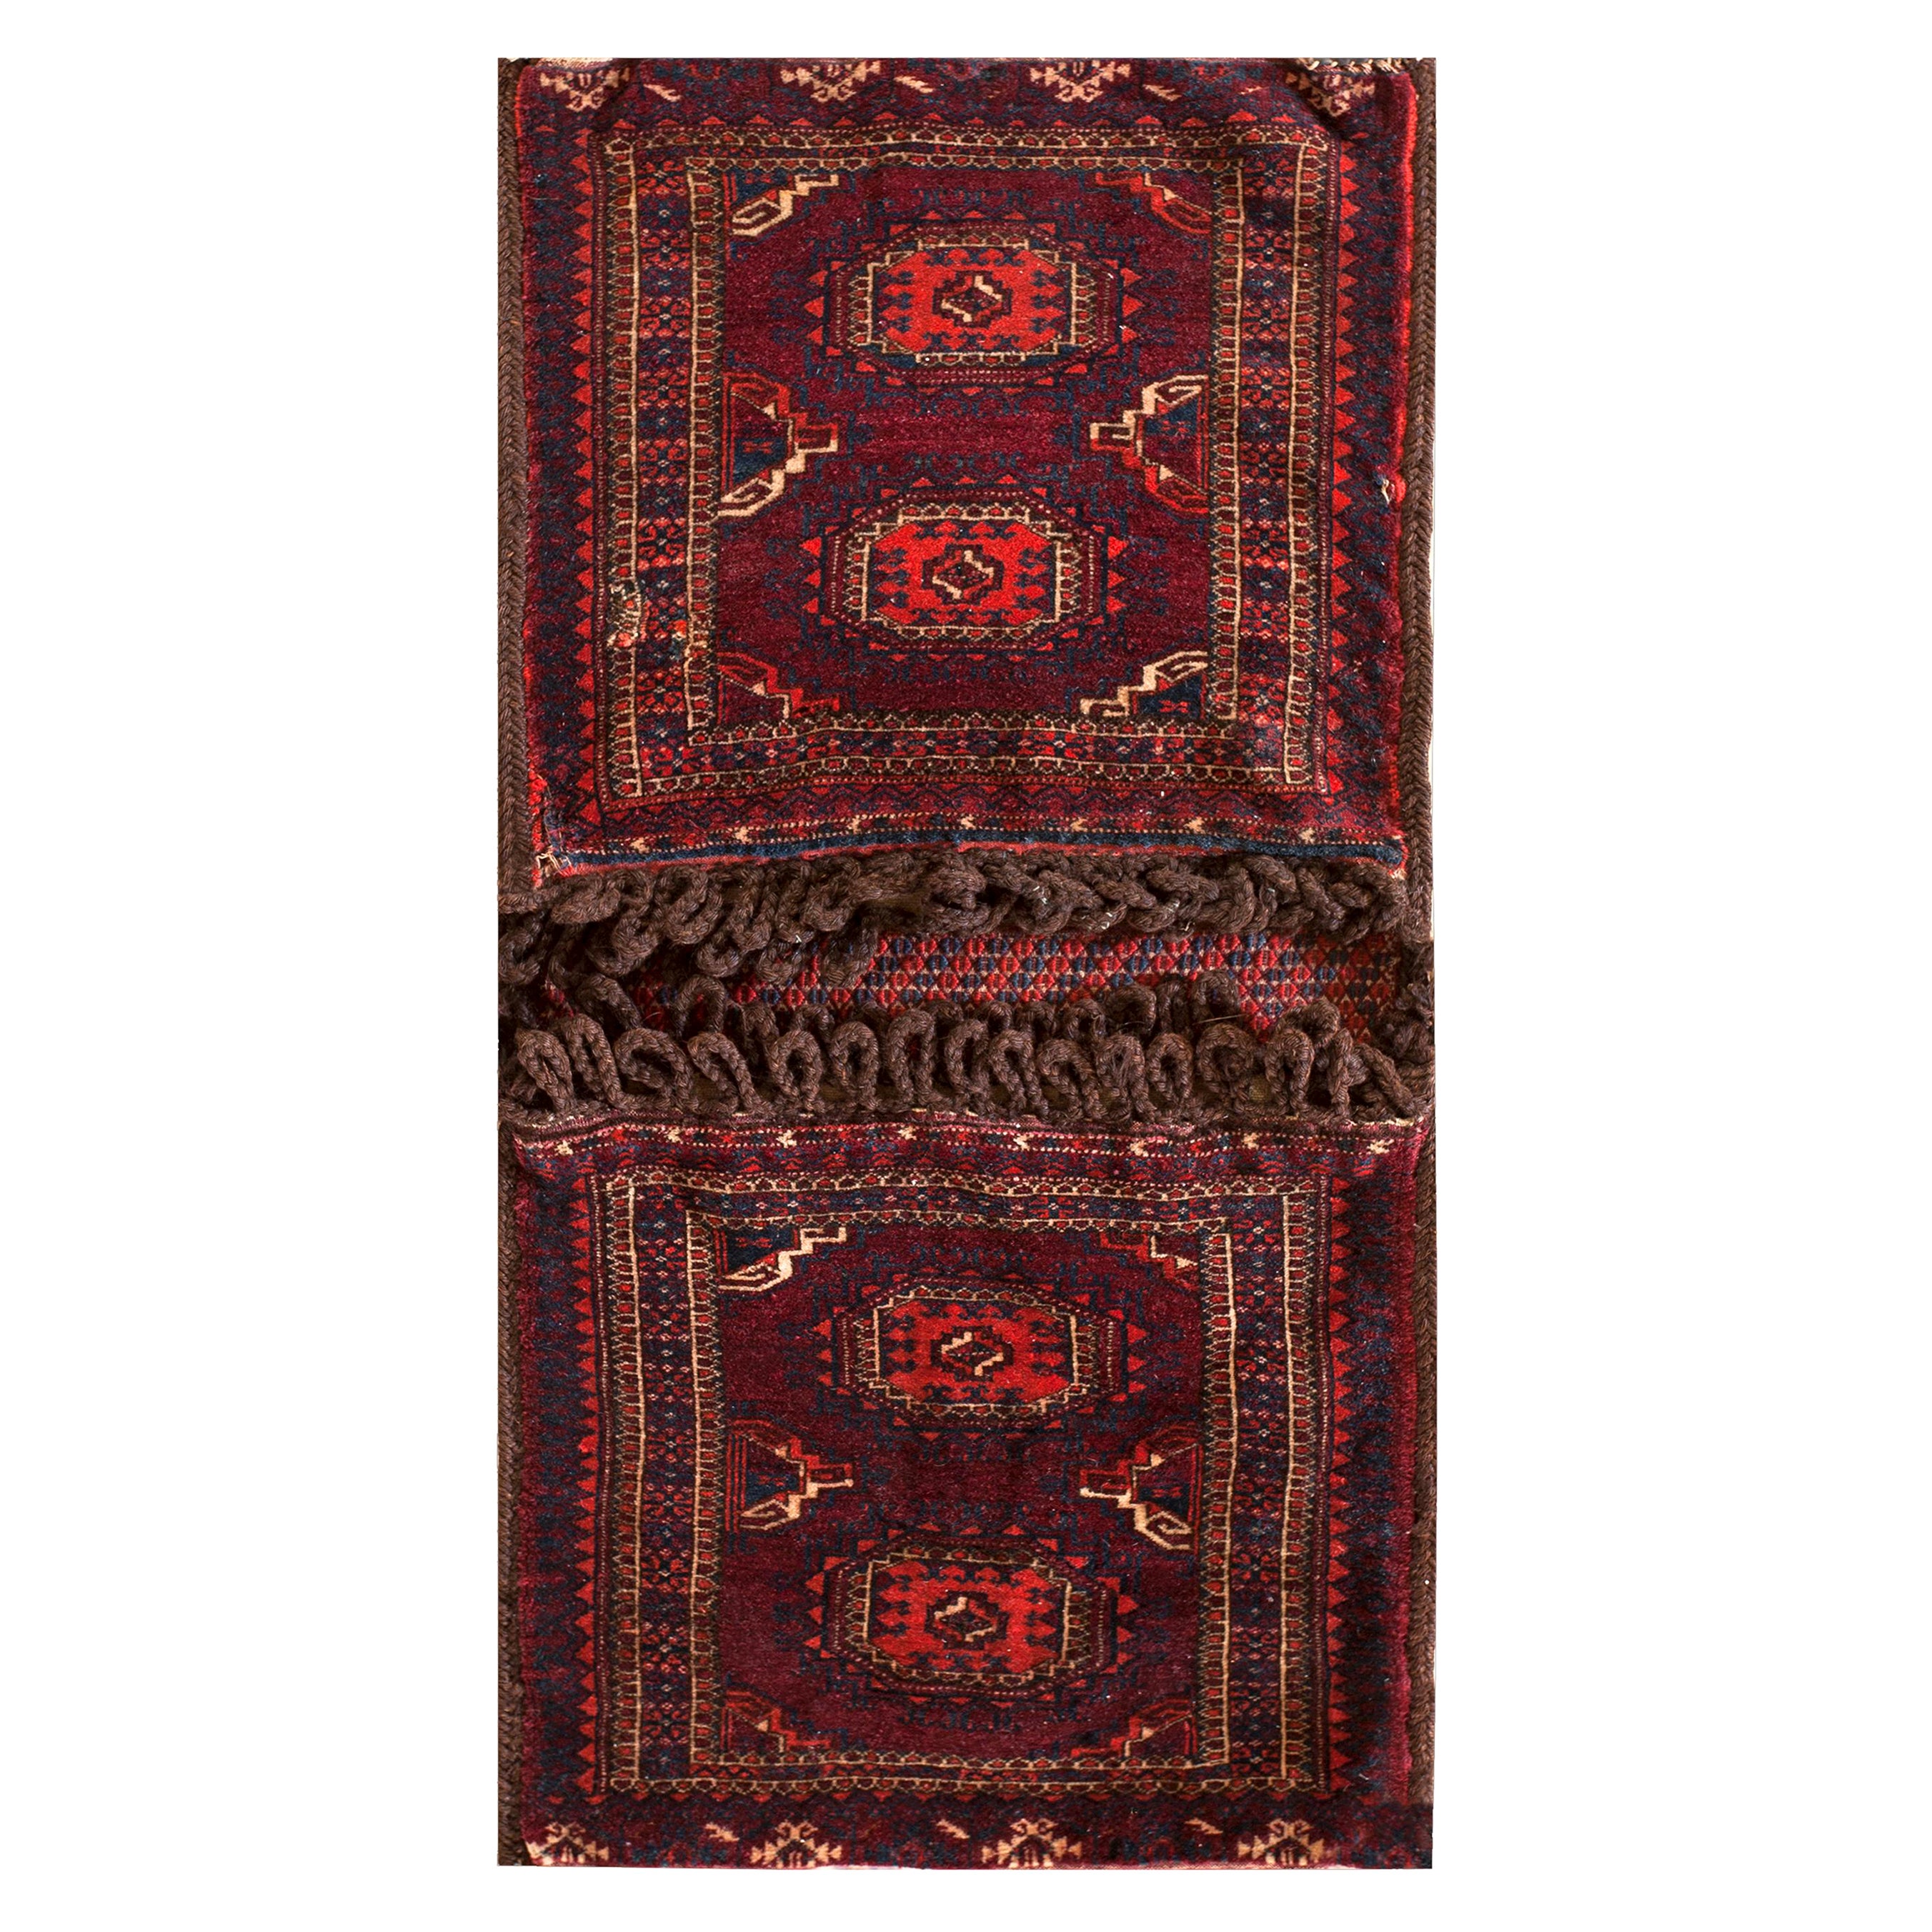 Antique Baluch Turkman Rug 1' 6" x 3' 2" 